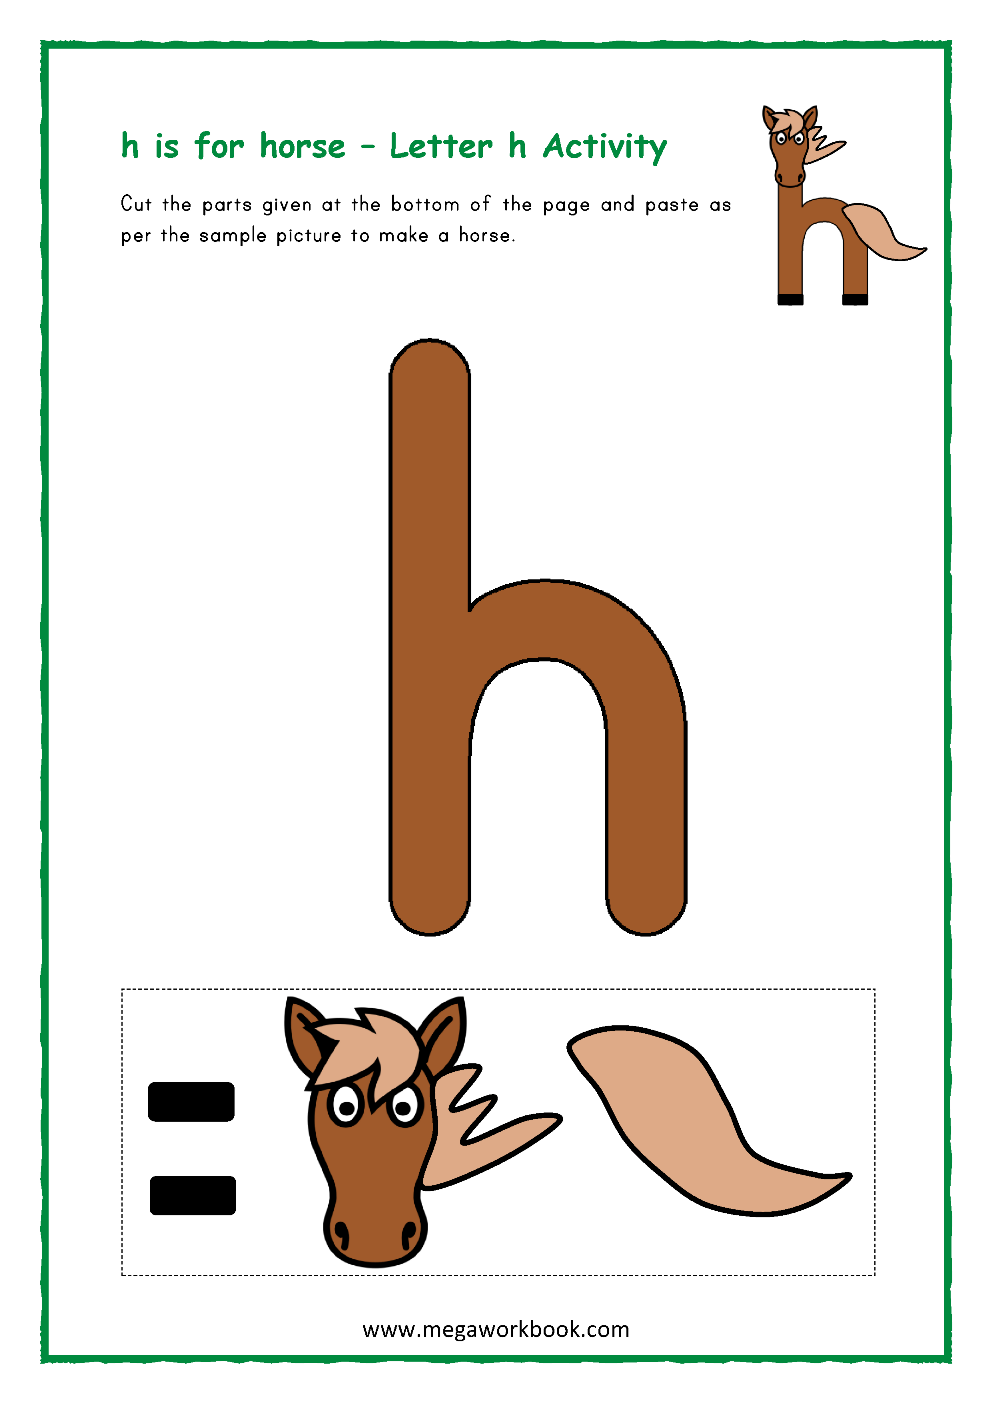 Letter H Activities Letter H Worksheets Letter H Crafts For Preschoolers Letter H Printables Megaworkbook